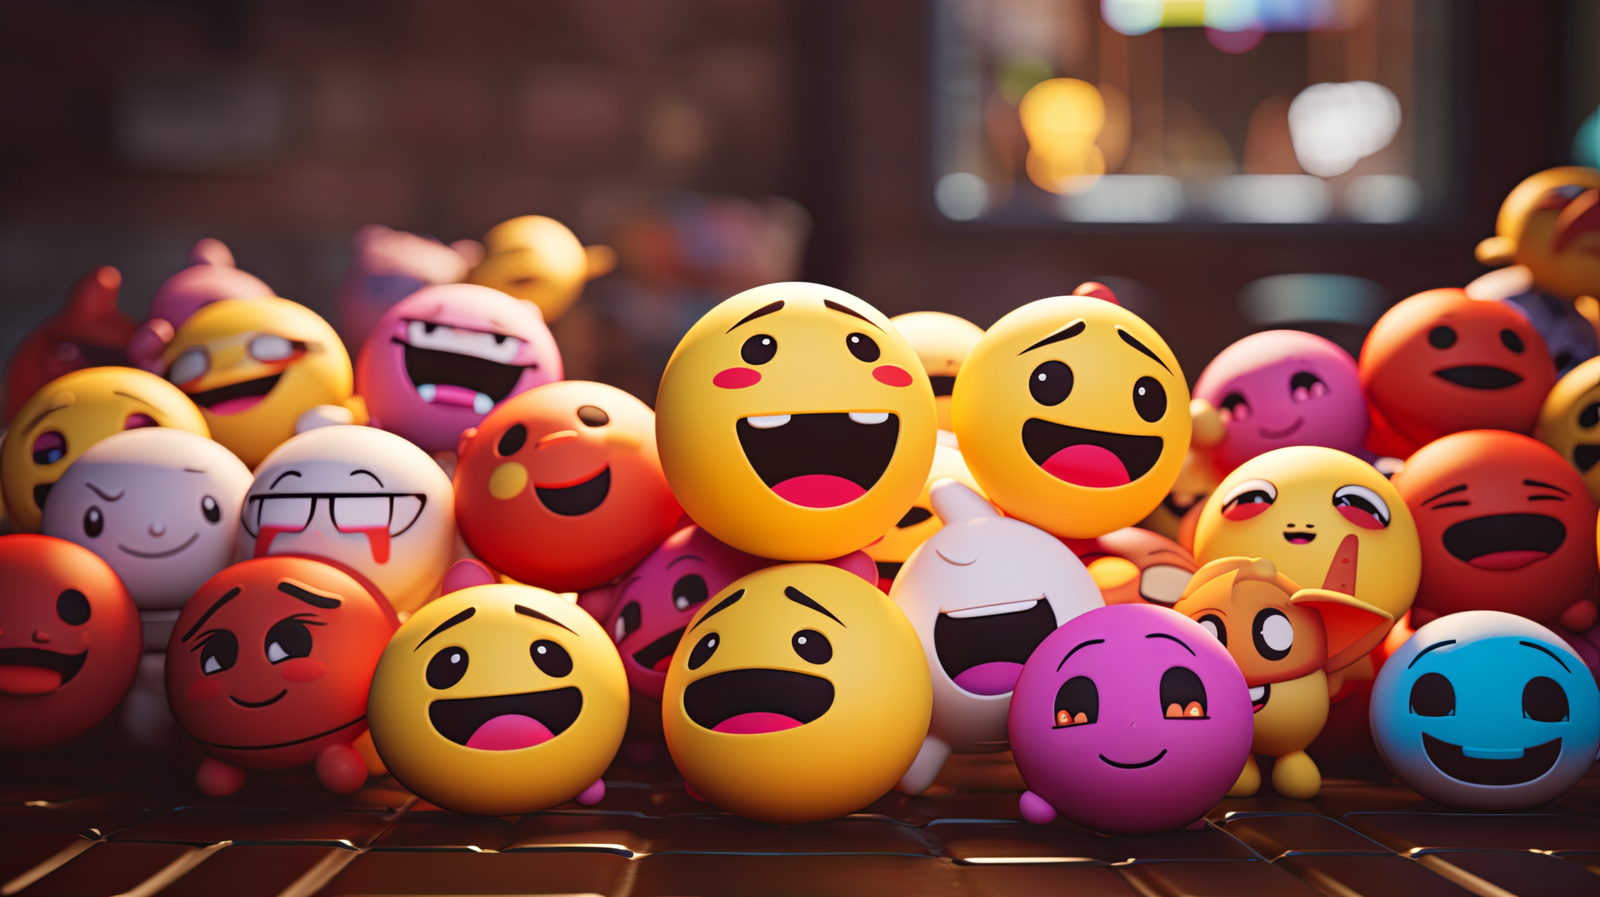 Bedeutung von Emojis verstehen: 😊 und 🥰 erklärt